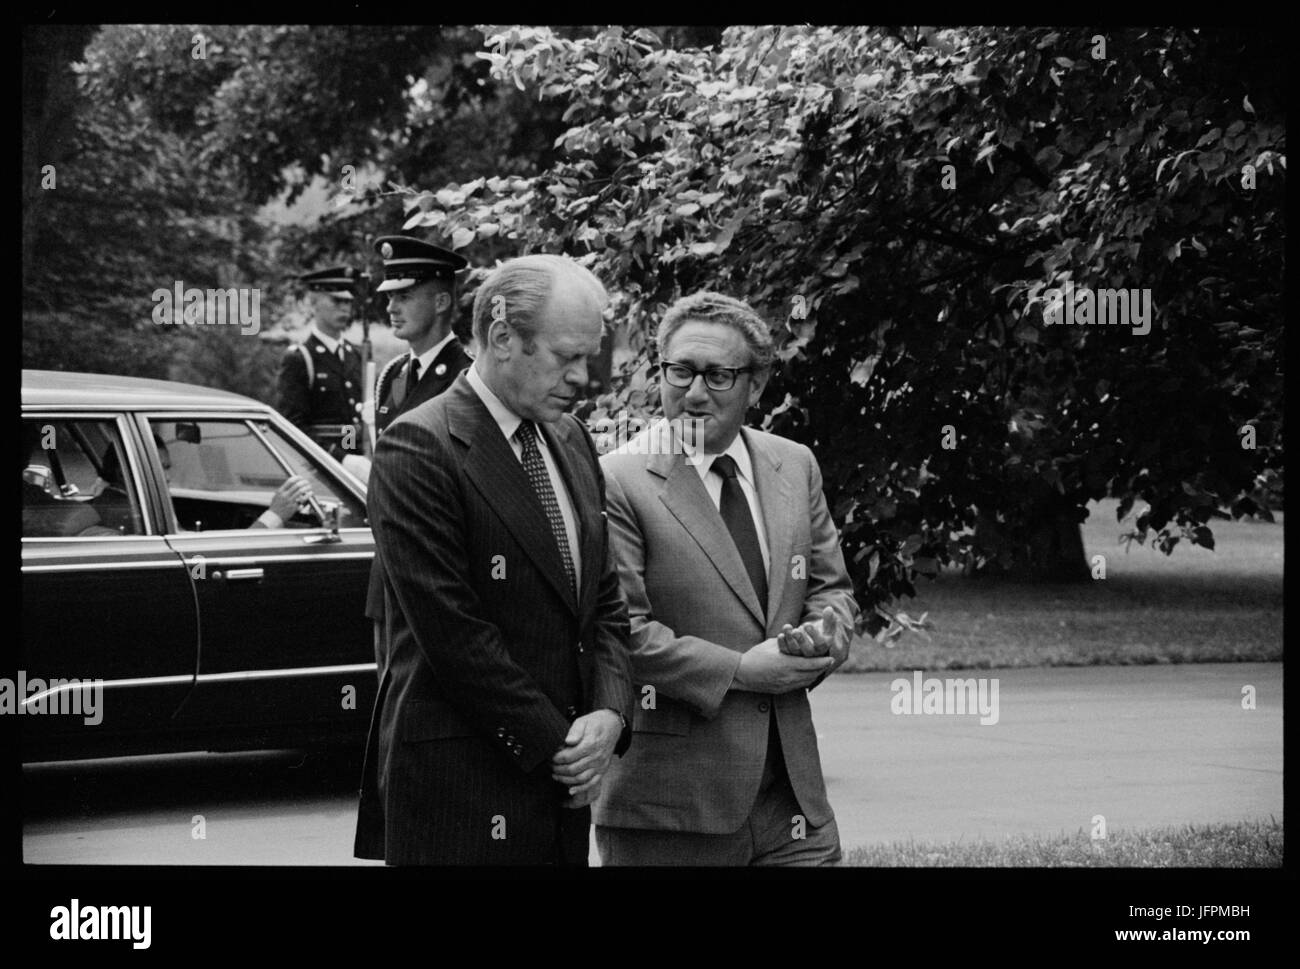 Le président Gerald Ford et secrétaire d'État Henry Kissinger, conversant, sur le terrain de la Maison Blanche, Washington, D.C., le 16 août 1975. Photo de Thomas O'Halloran. Banque D'Images